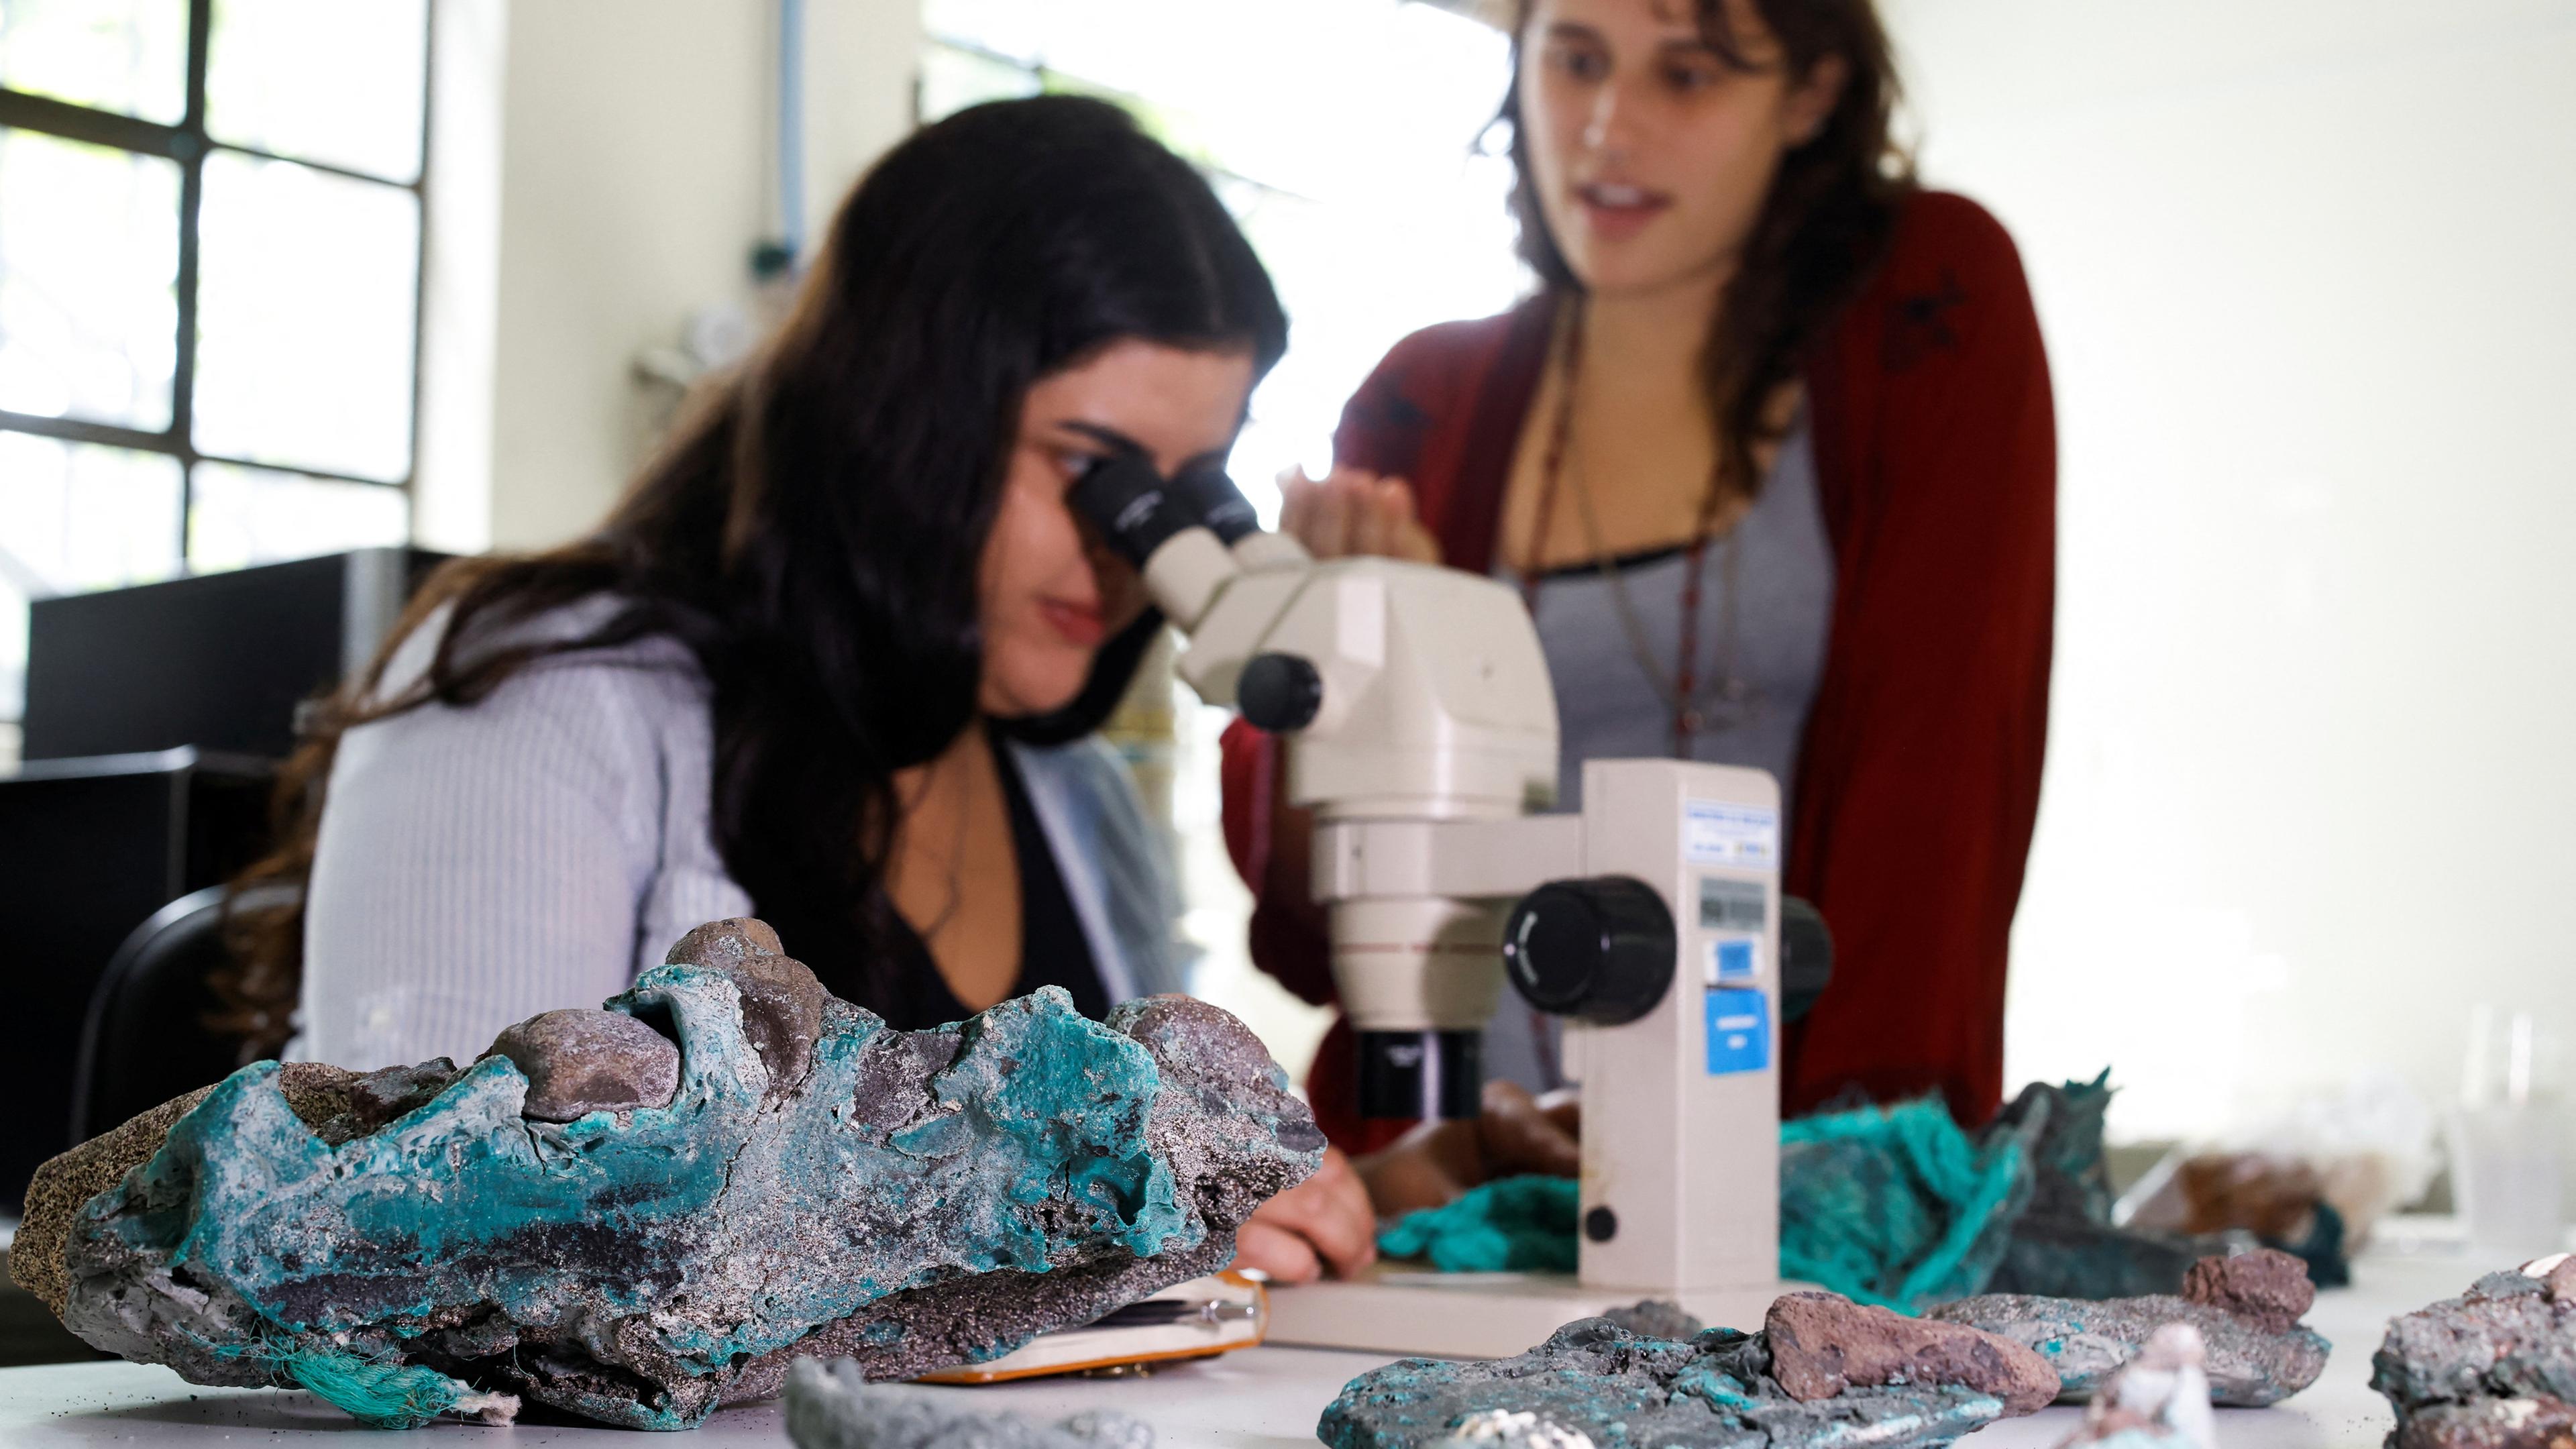 Forscherin Fernanda Avelar Santos betrachtet die "Plastikfelsen" durch ein Mikroskop.